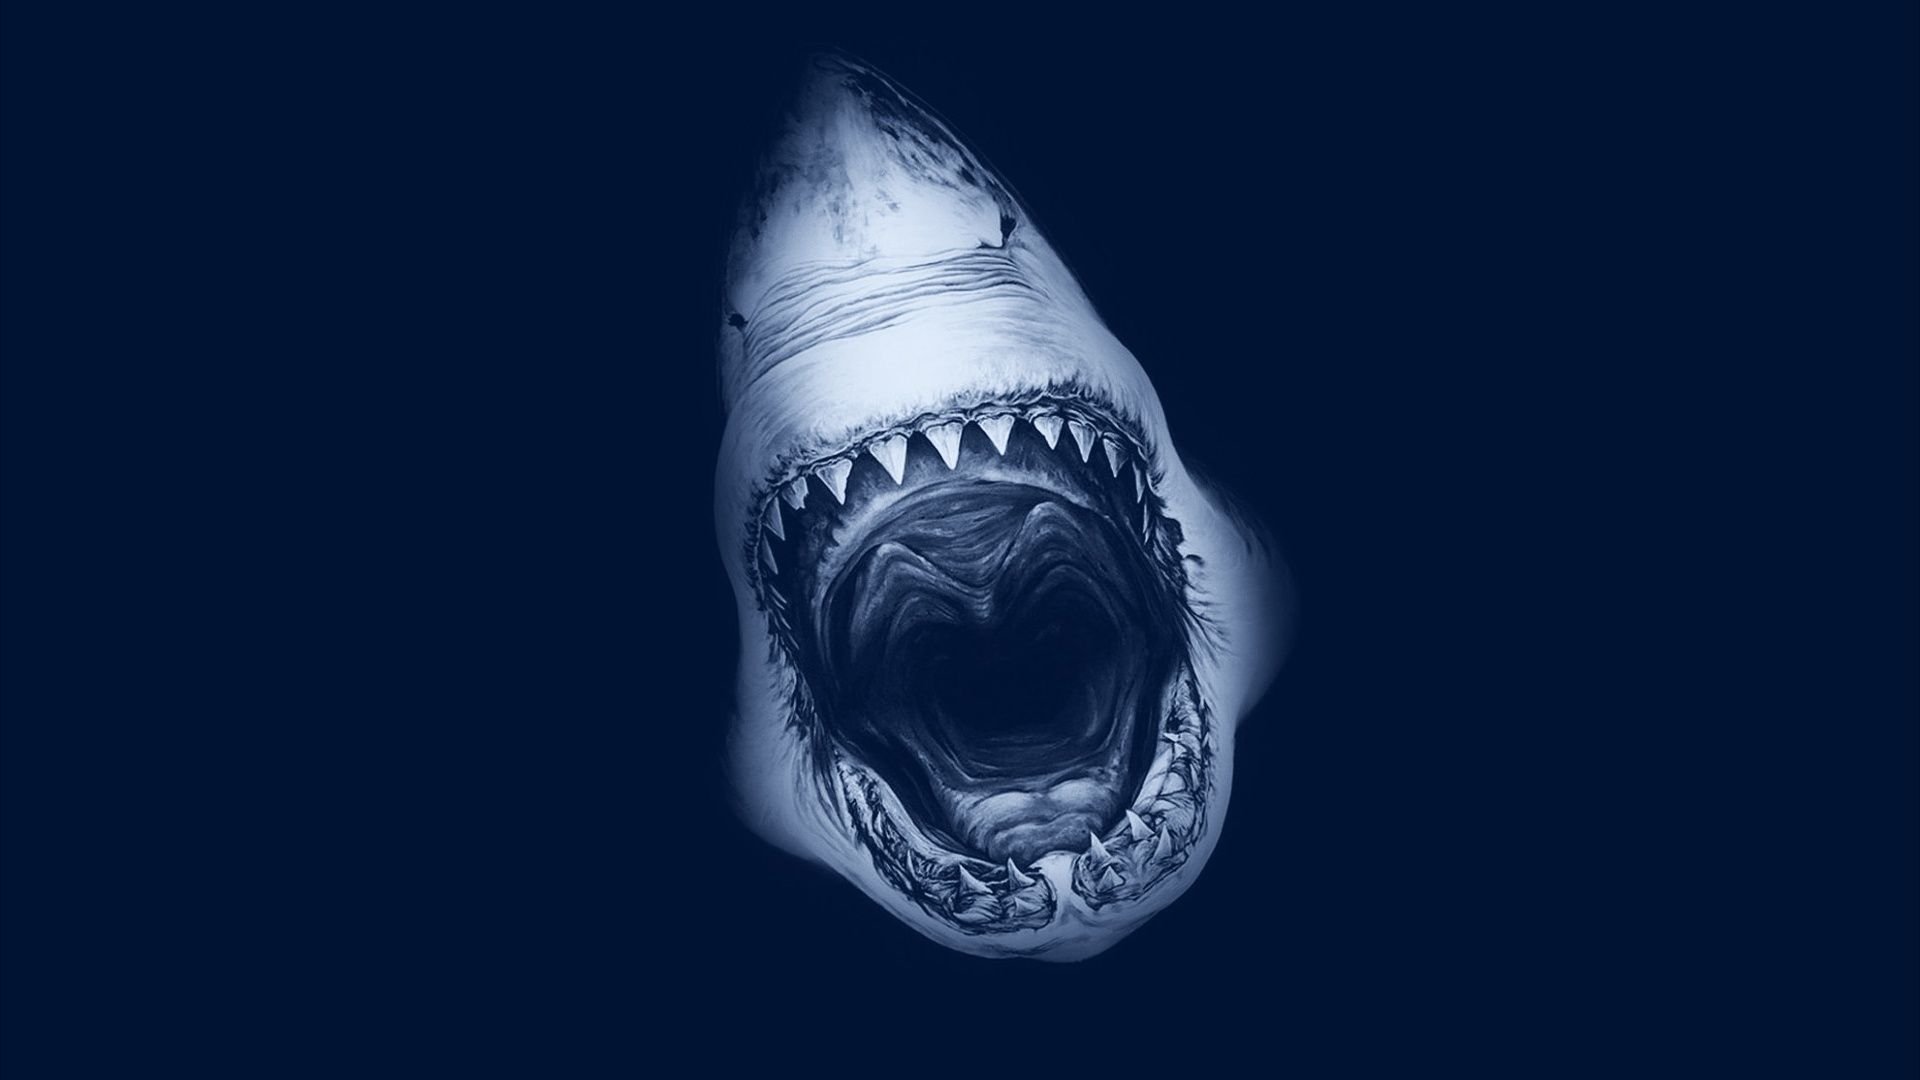 Shark HD Wallpaper 1662 - Shark HD .digitalresult.com